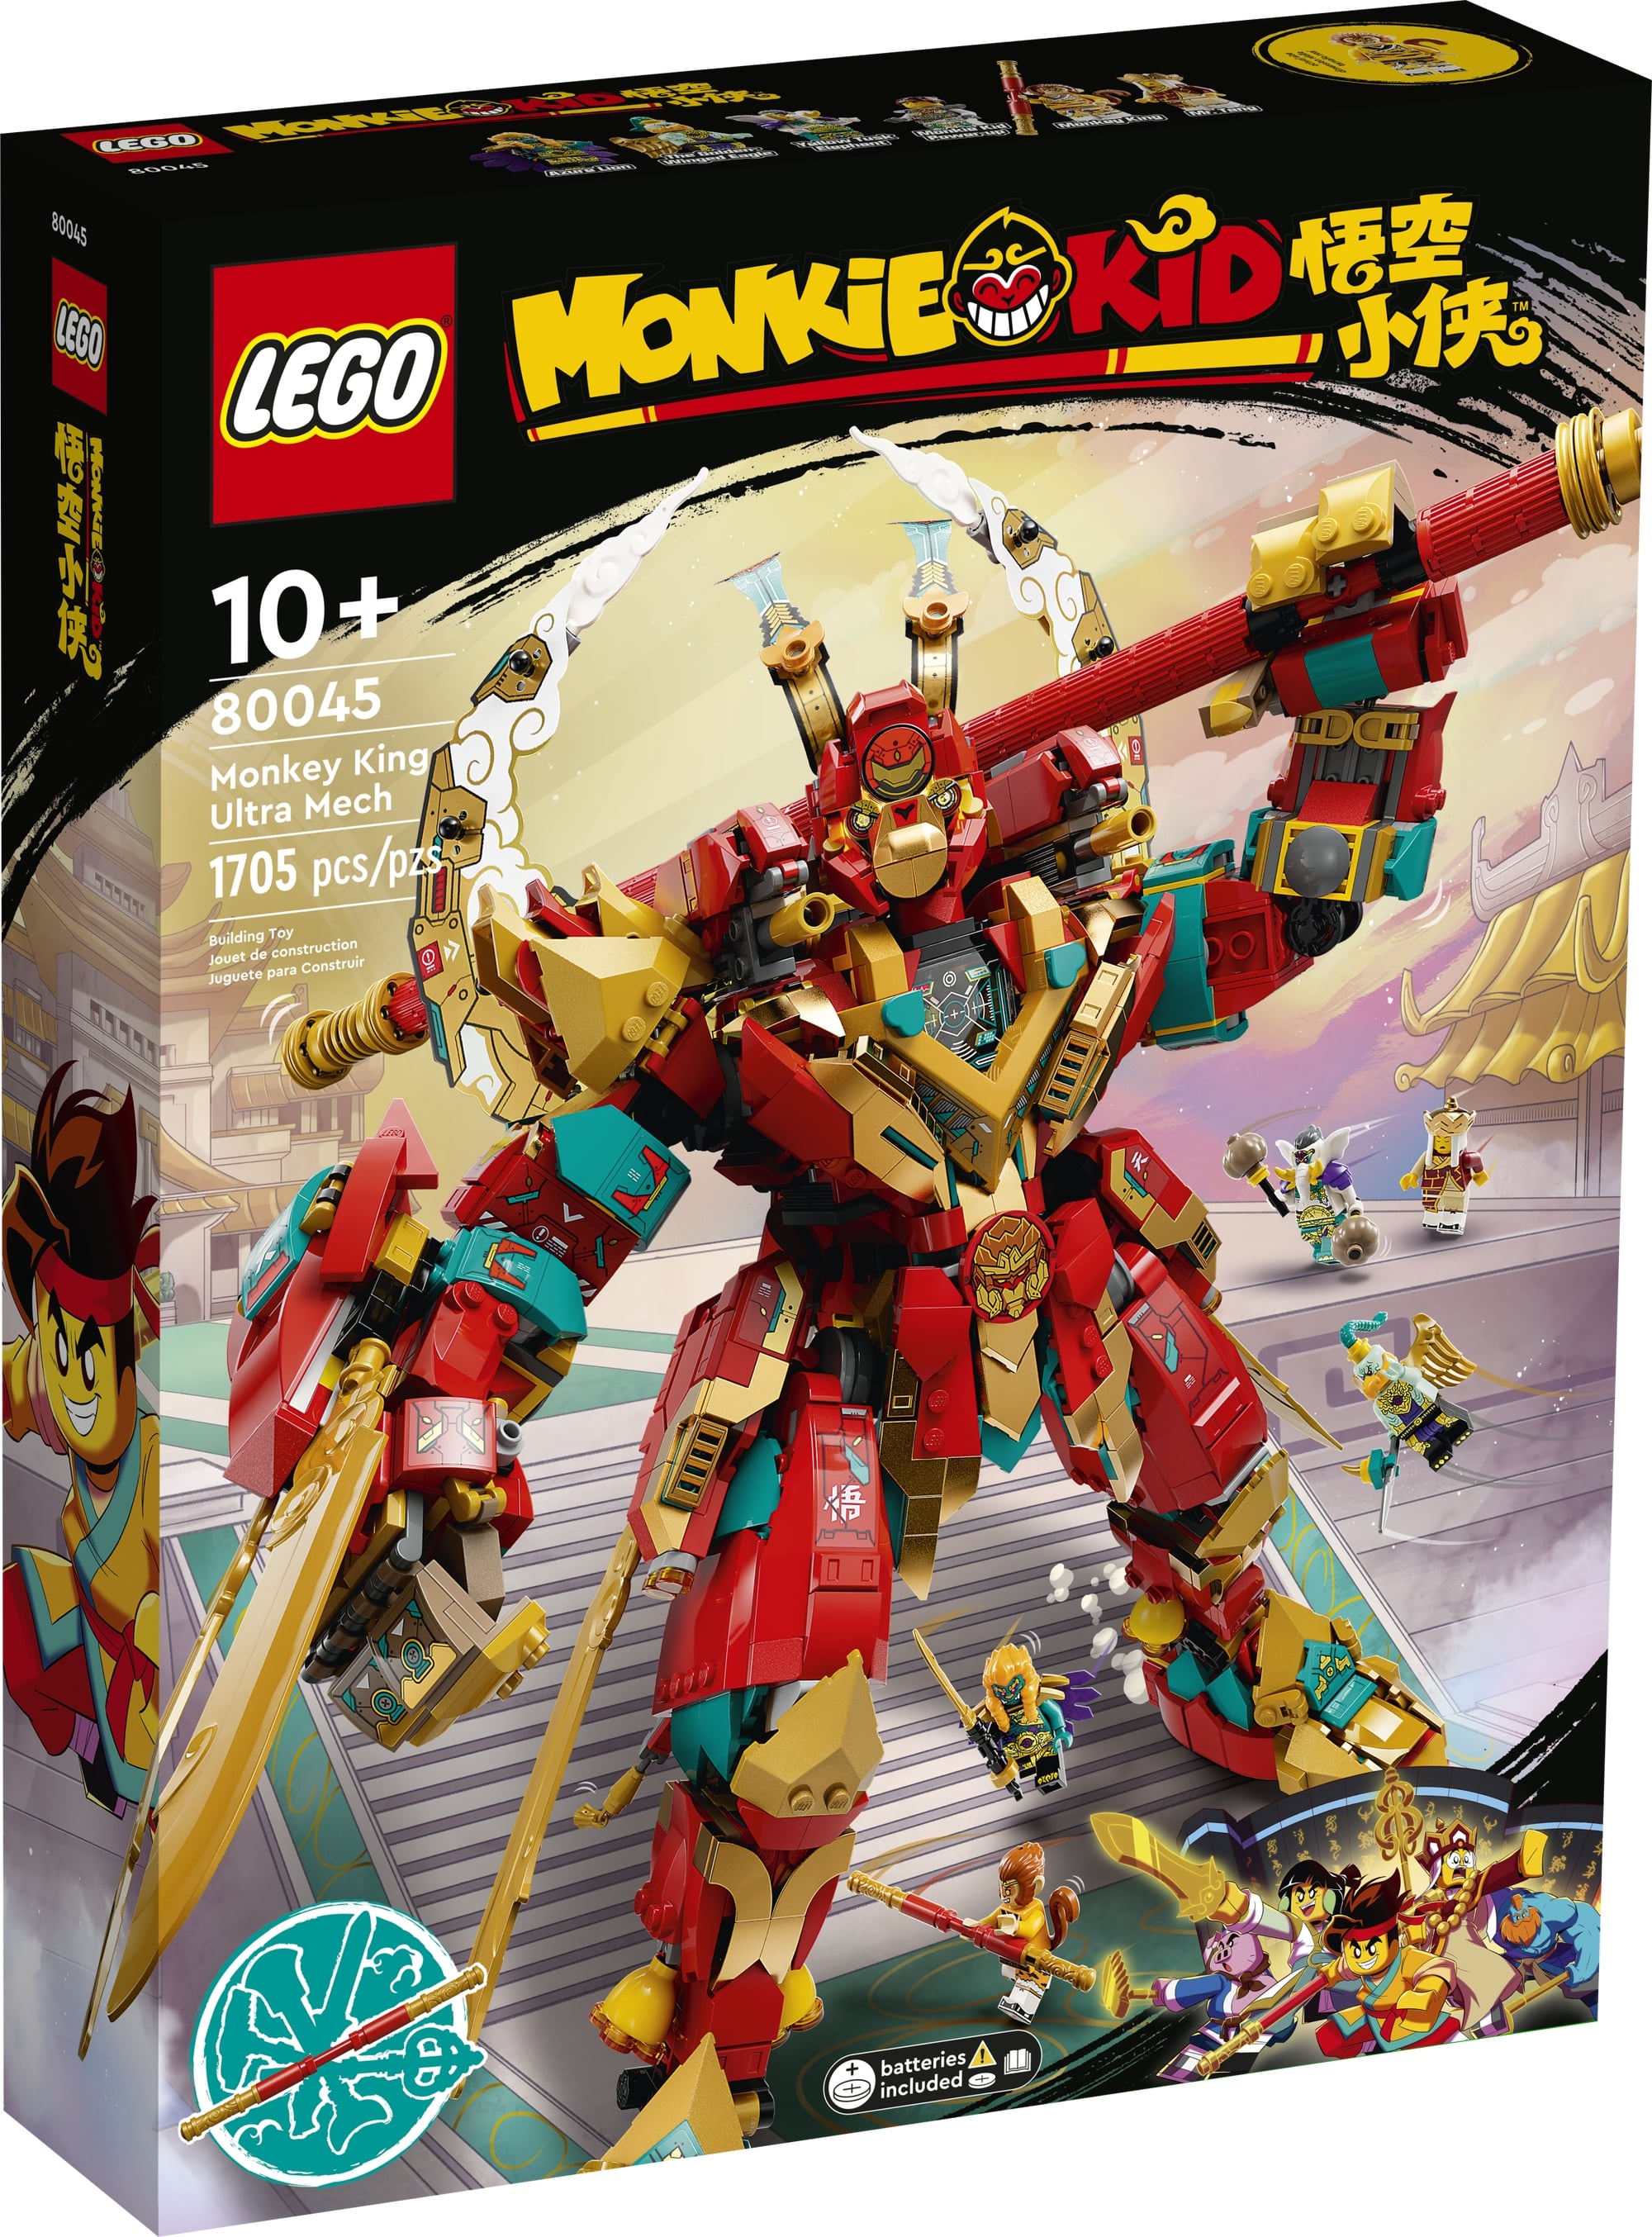 LEGO Monkie Kid 80045 Monkey Kings Ultra Mech 2